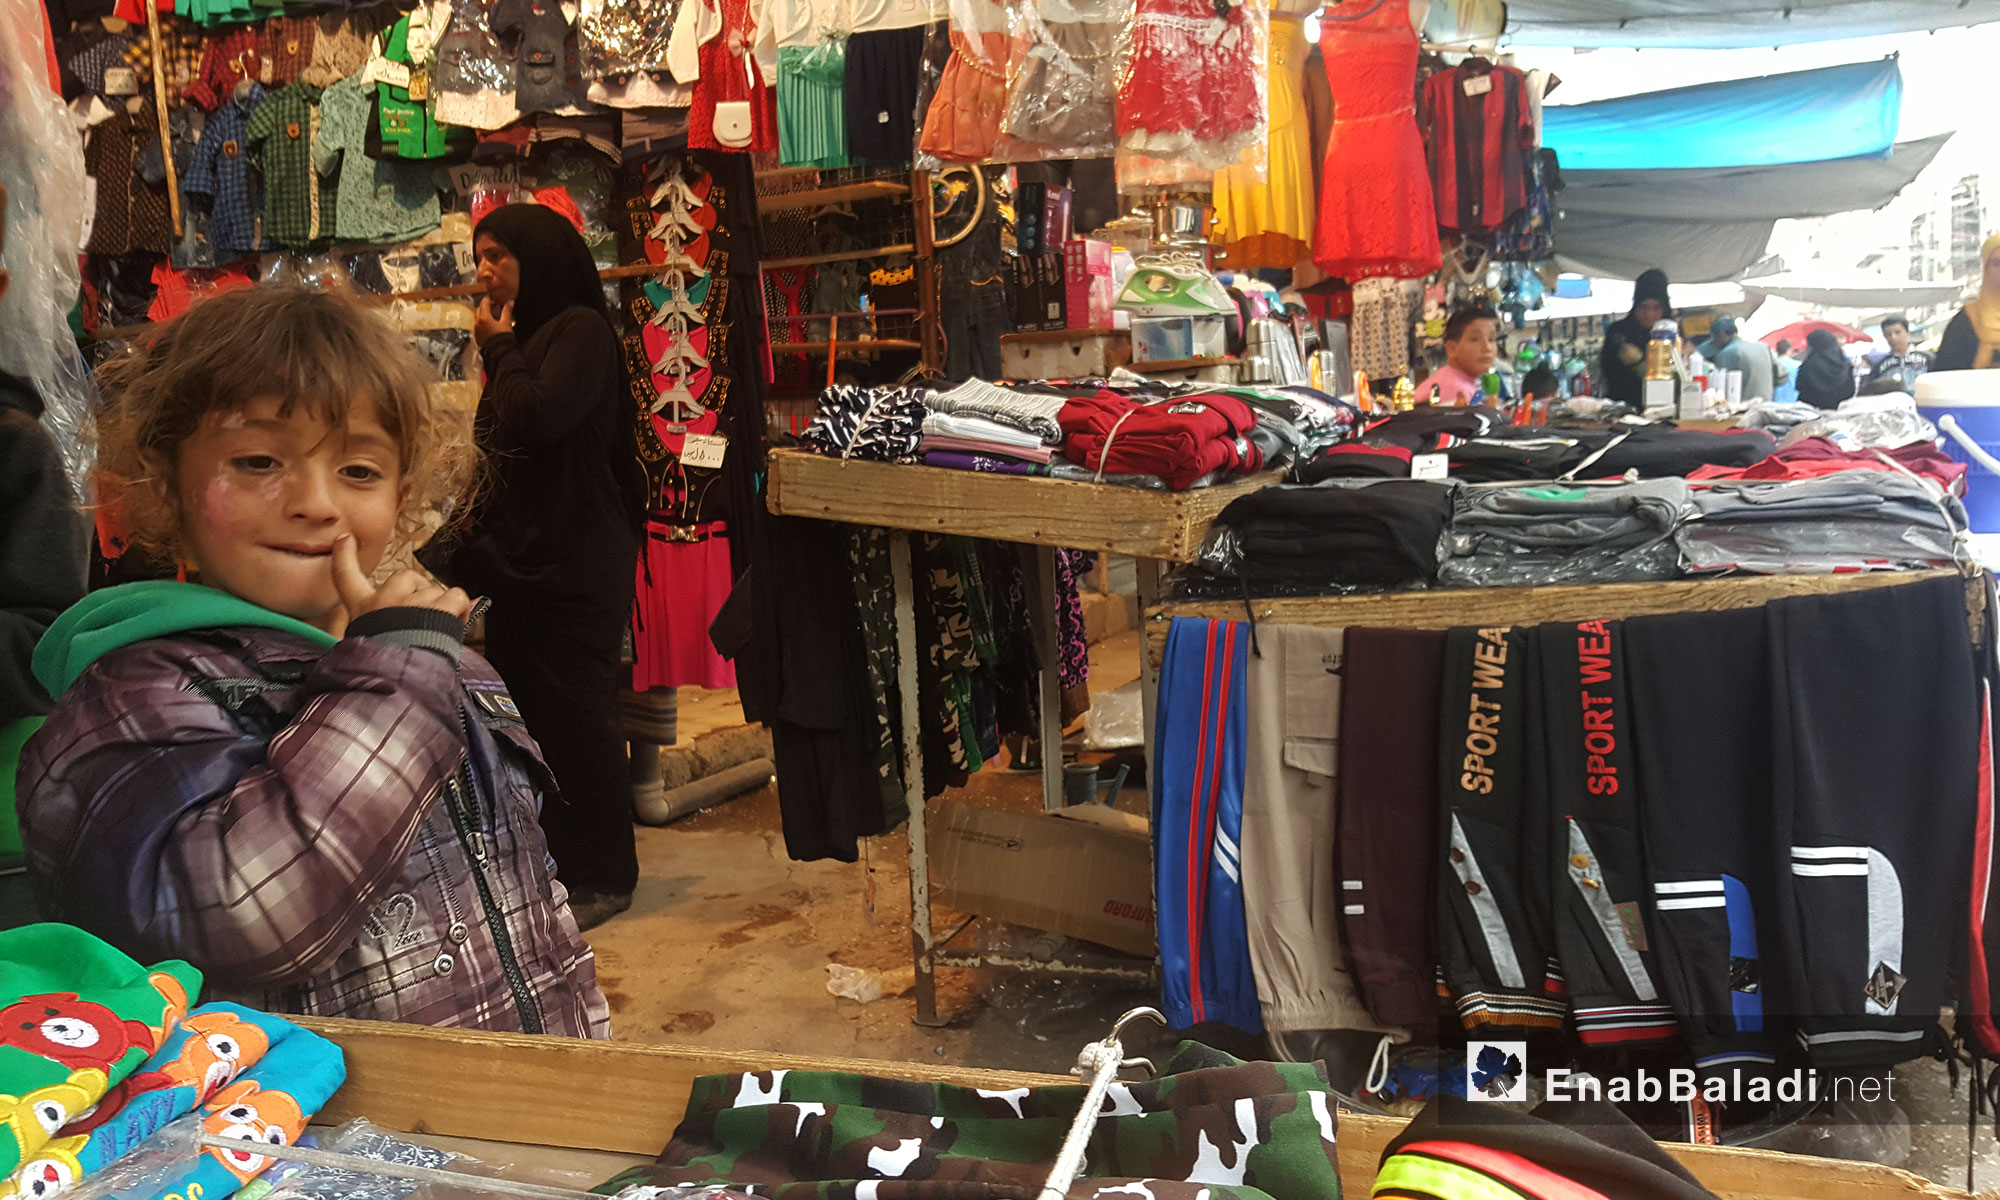 مواطنون يتسوقون في "سوق الأتراك" في مدينة القامشلي - 5 أيار 2017 (عنب بلدي)